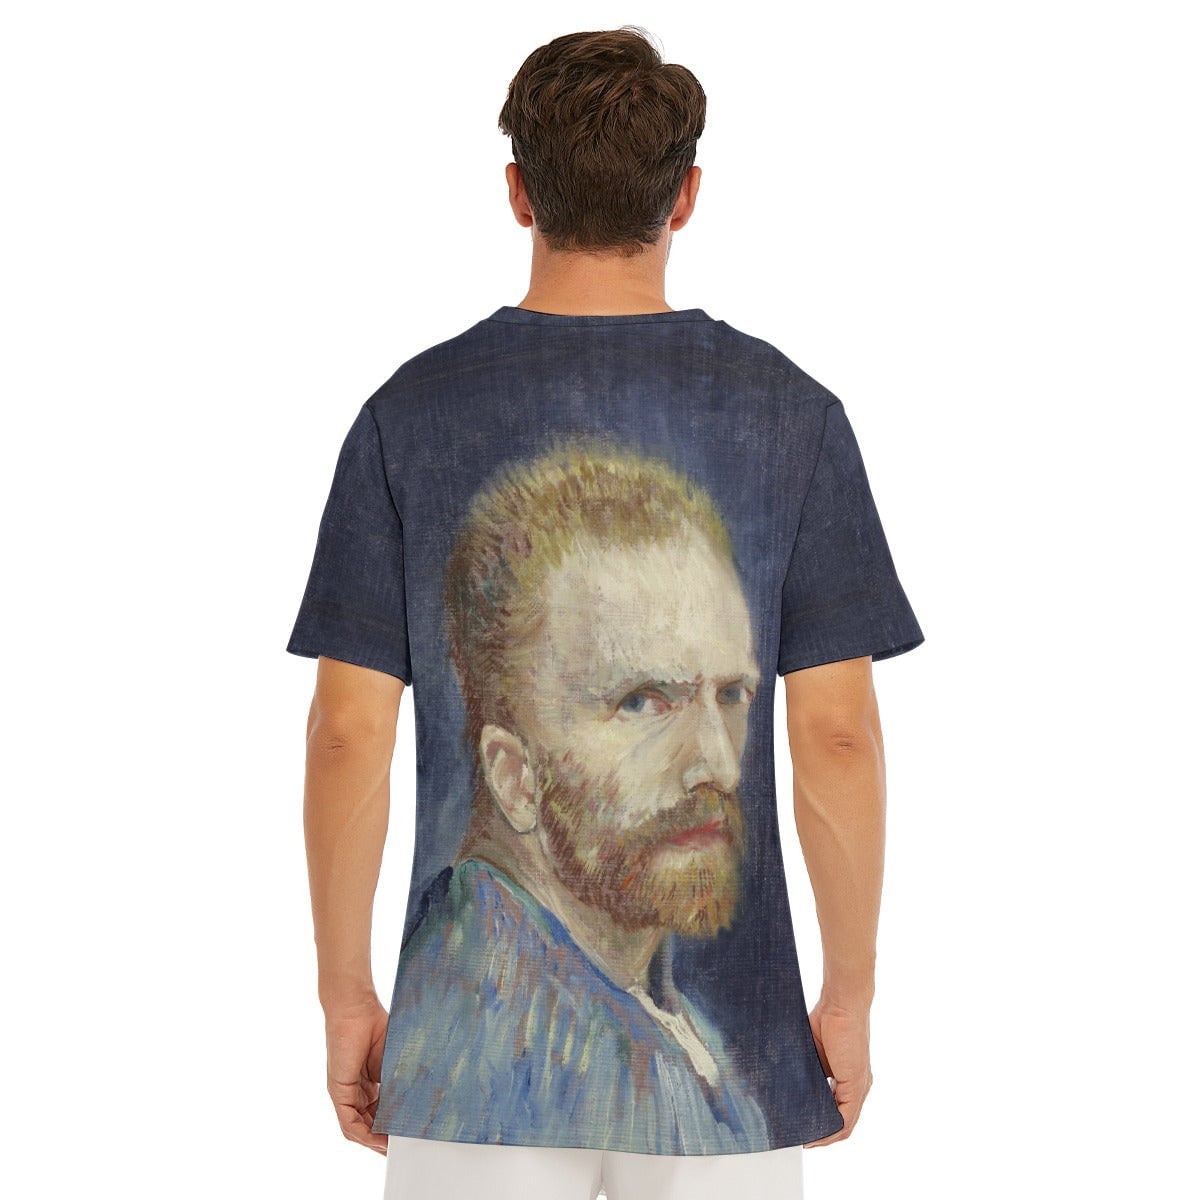 Vincent van Gogh’s 1887 Self-Portrait T-Shirt